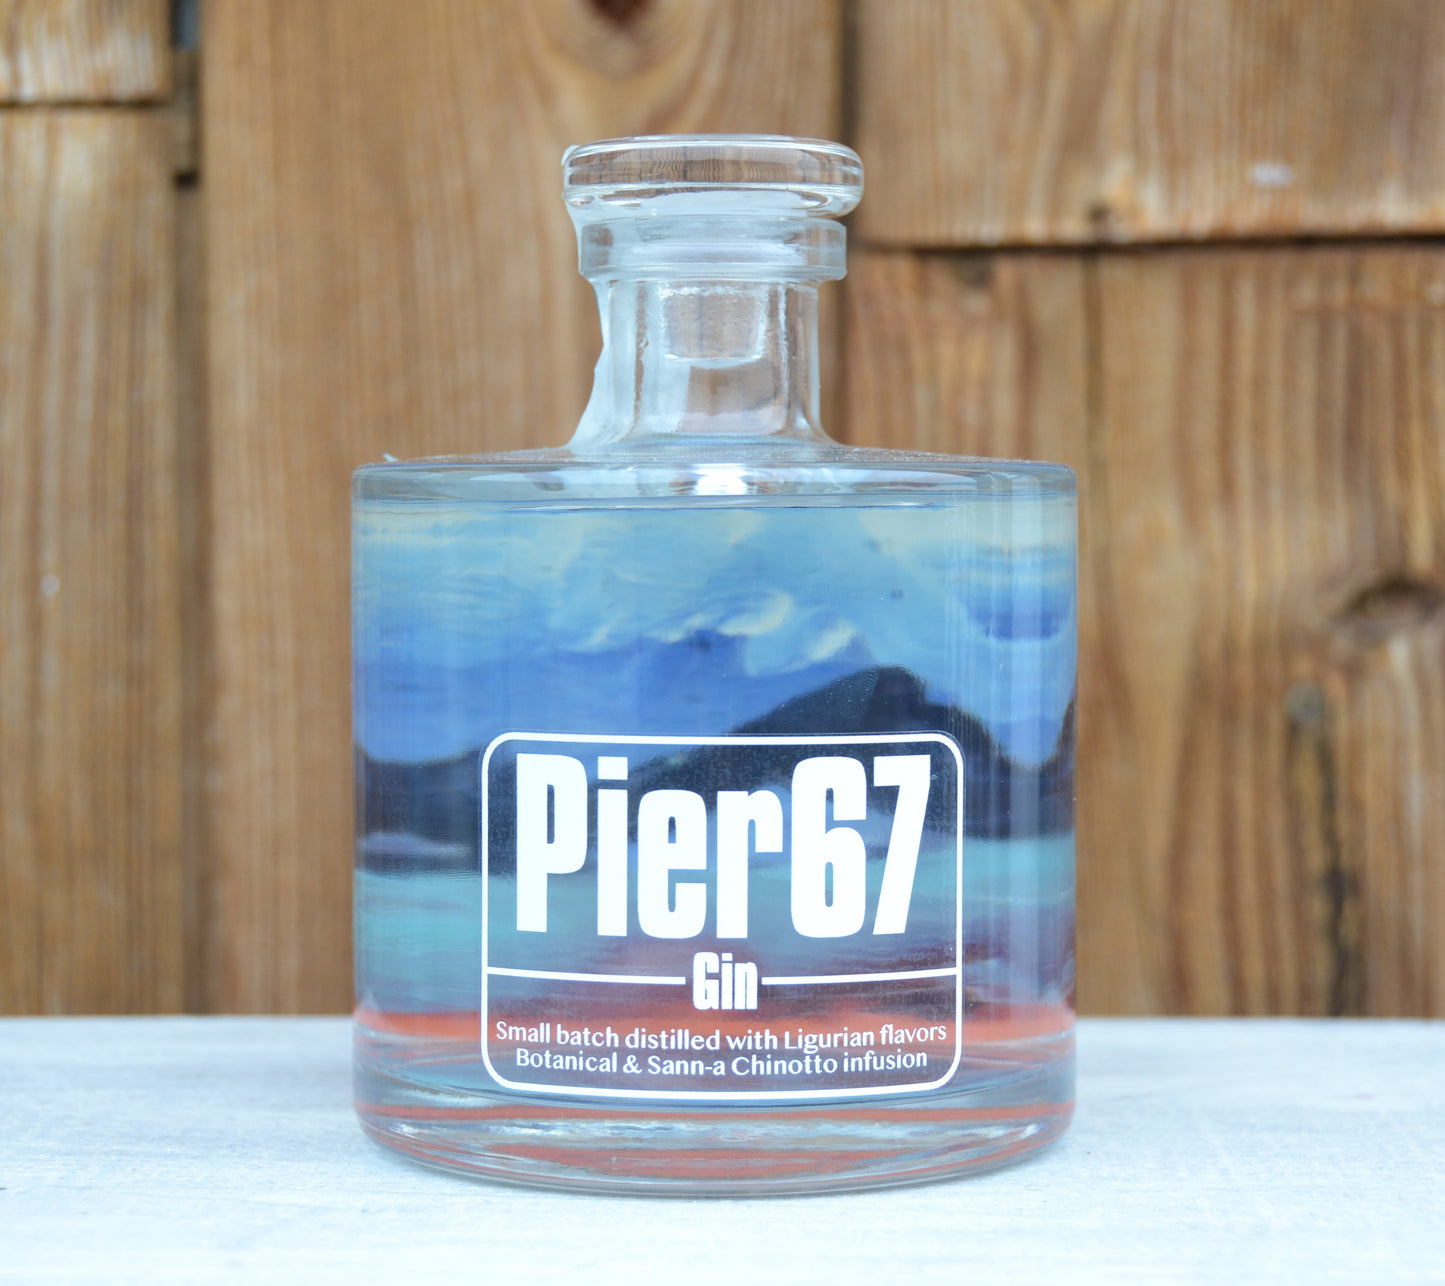 Pier67 Gin